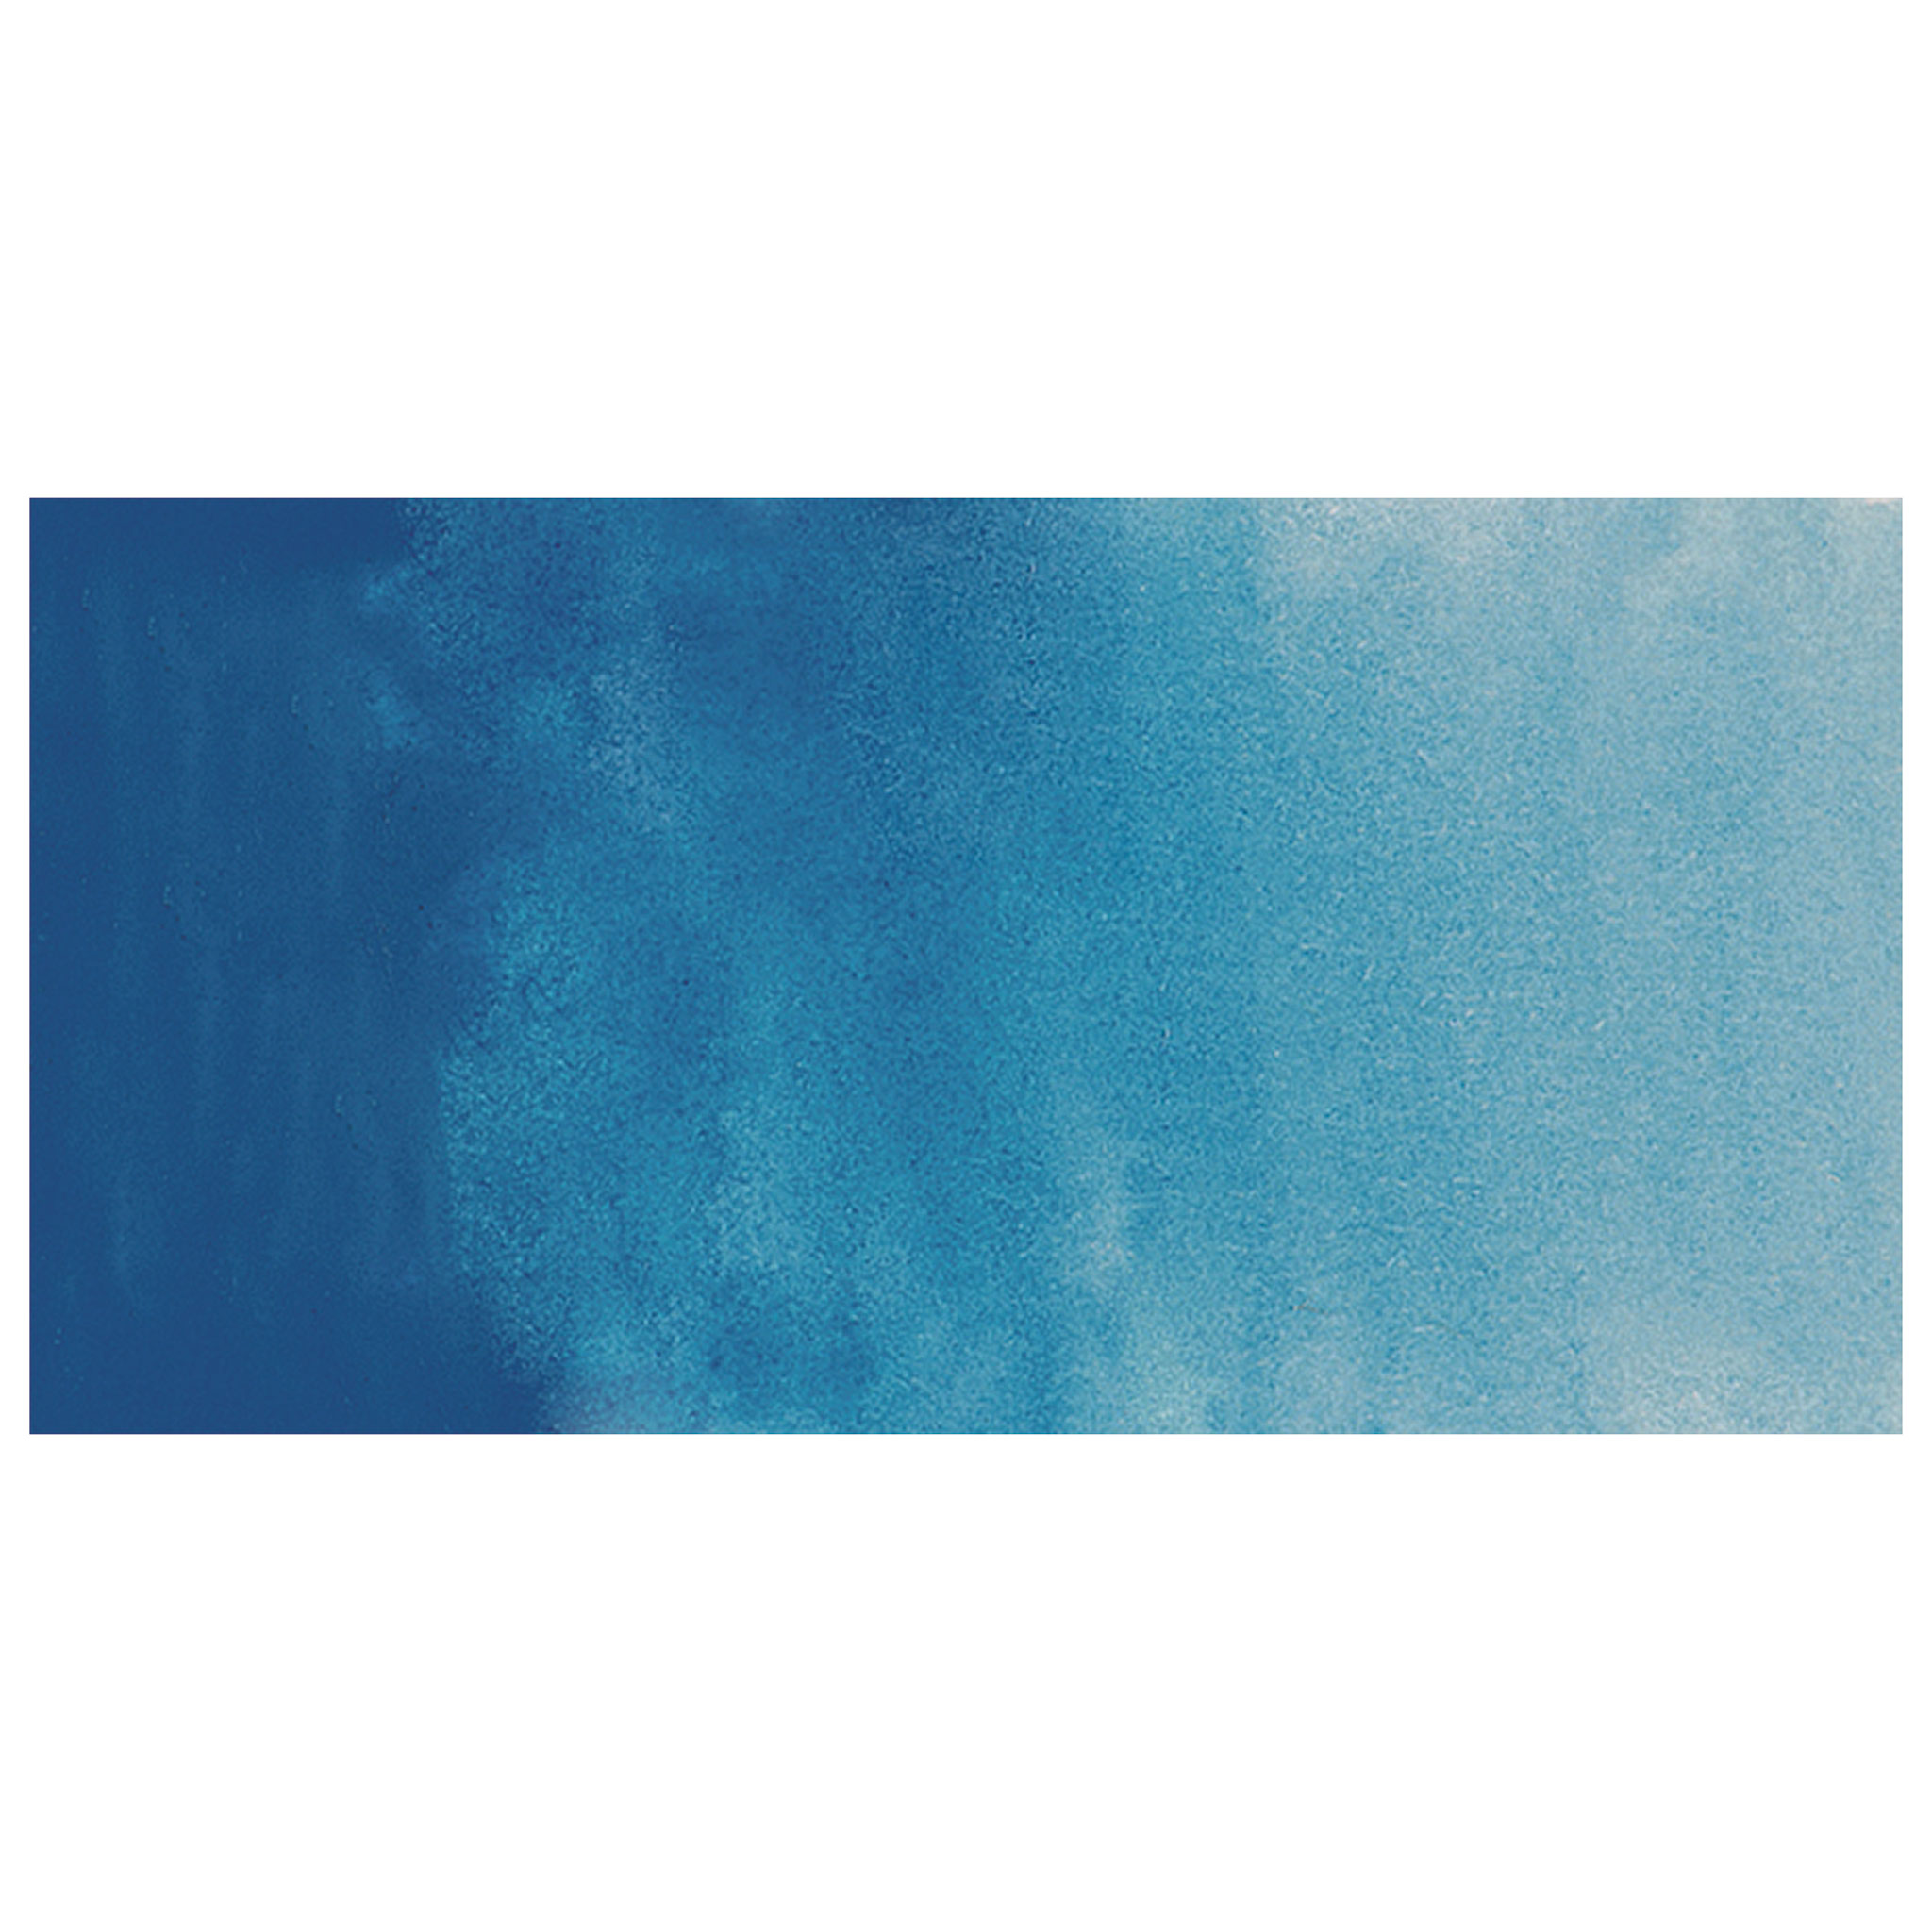 Review - Sennelier Aqua Mini Watercolor Set #Sennelier #Watercolor